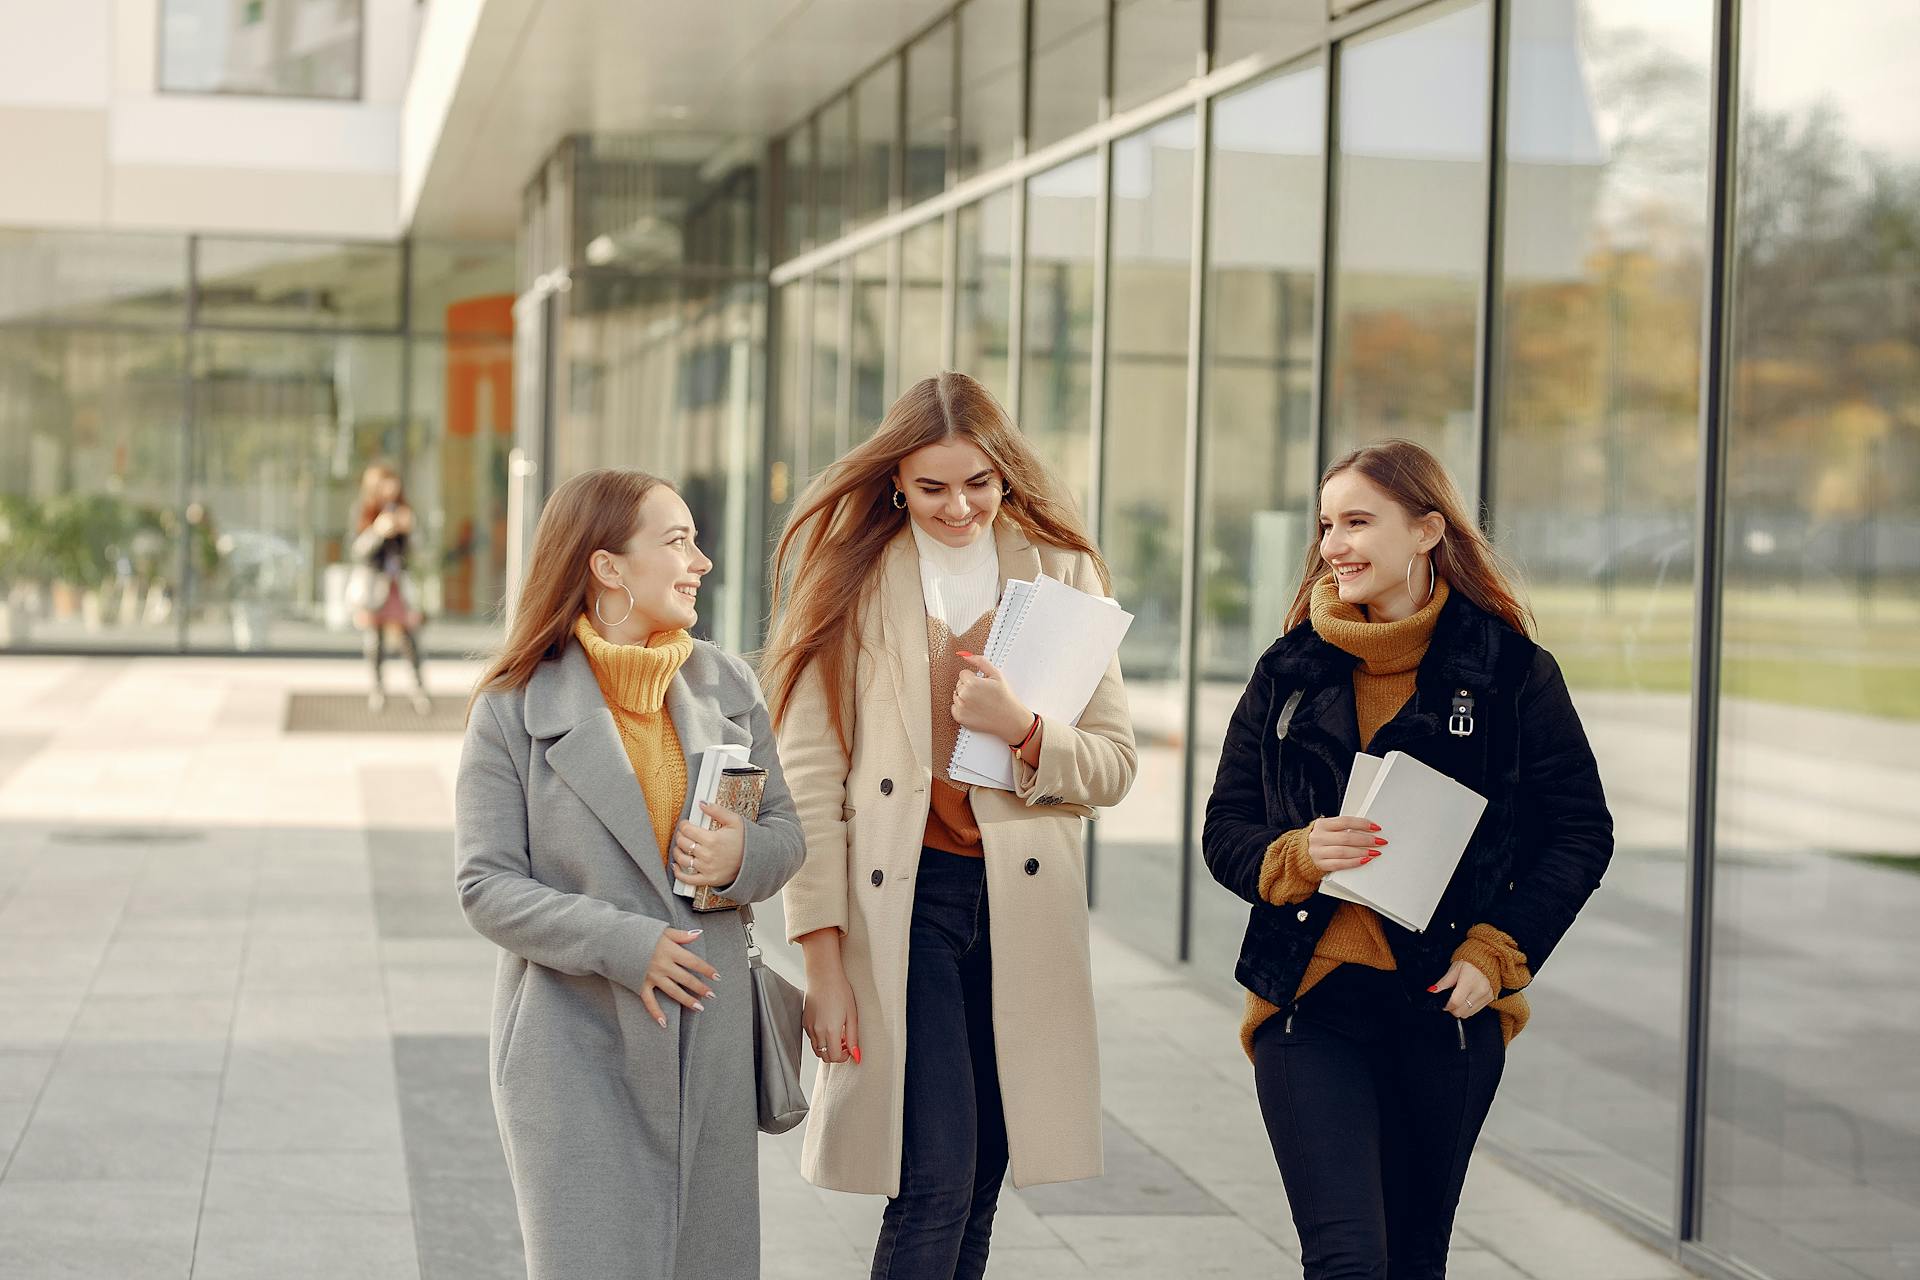 Drei Studentinnen lächeln, während sie über ihren Tag an der Uni sprechen | Quelle: Pexels